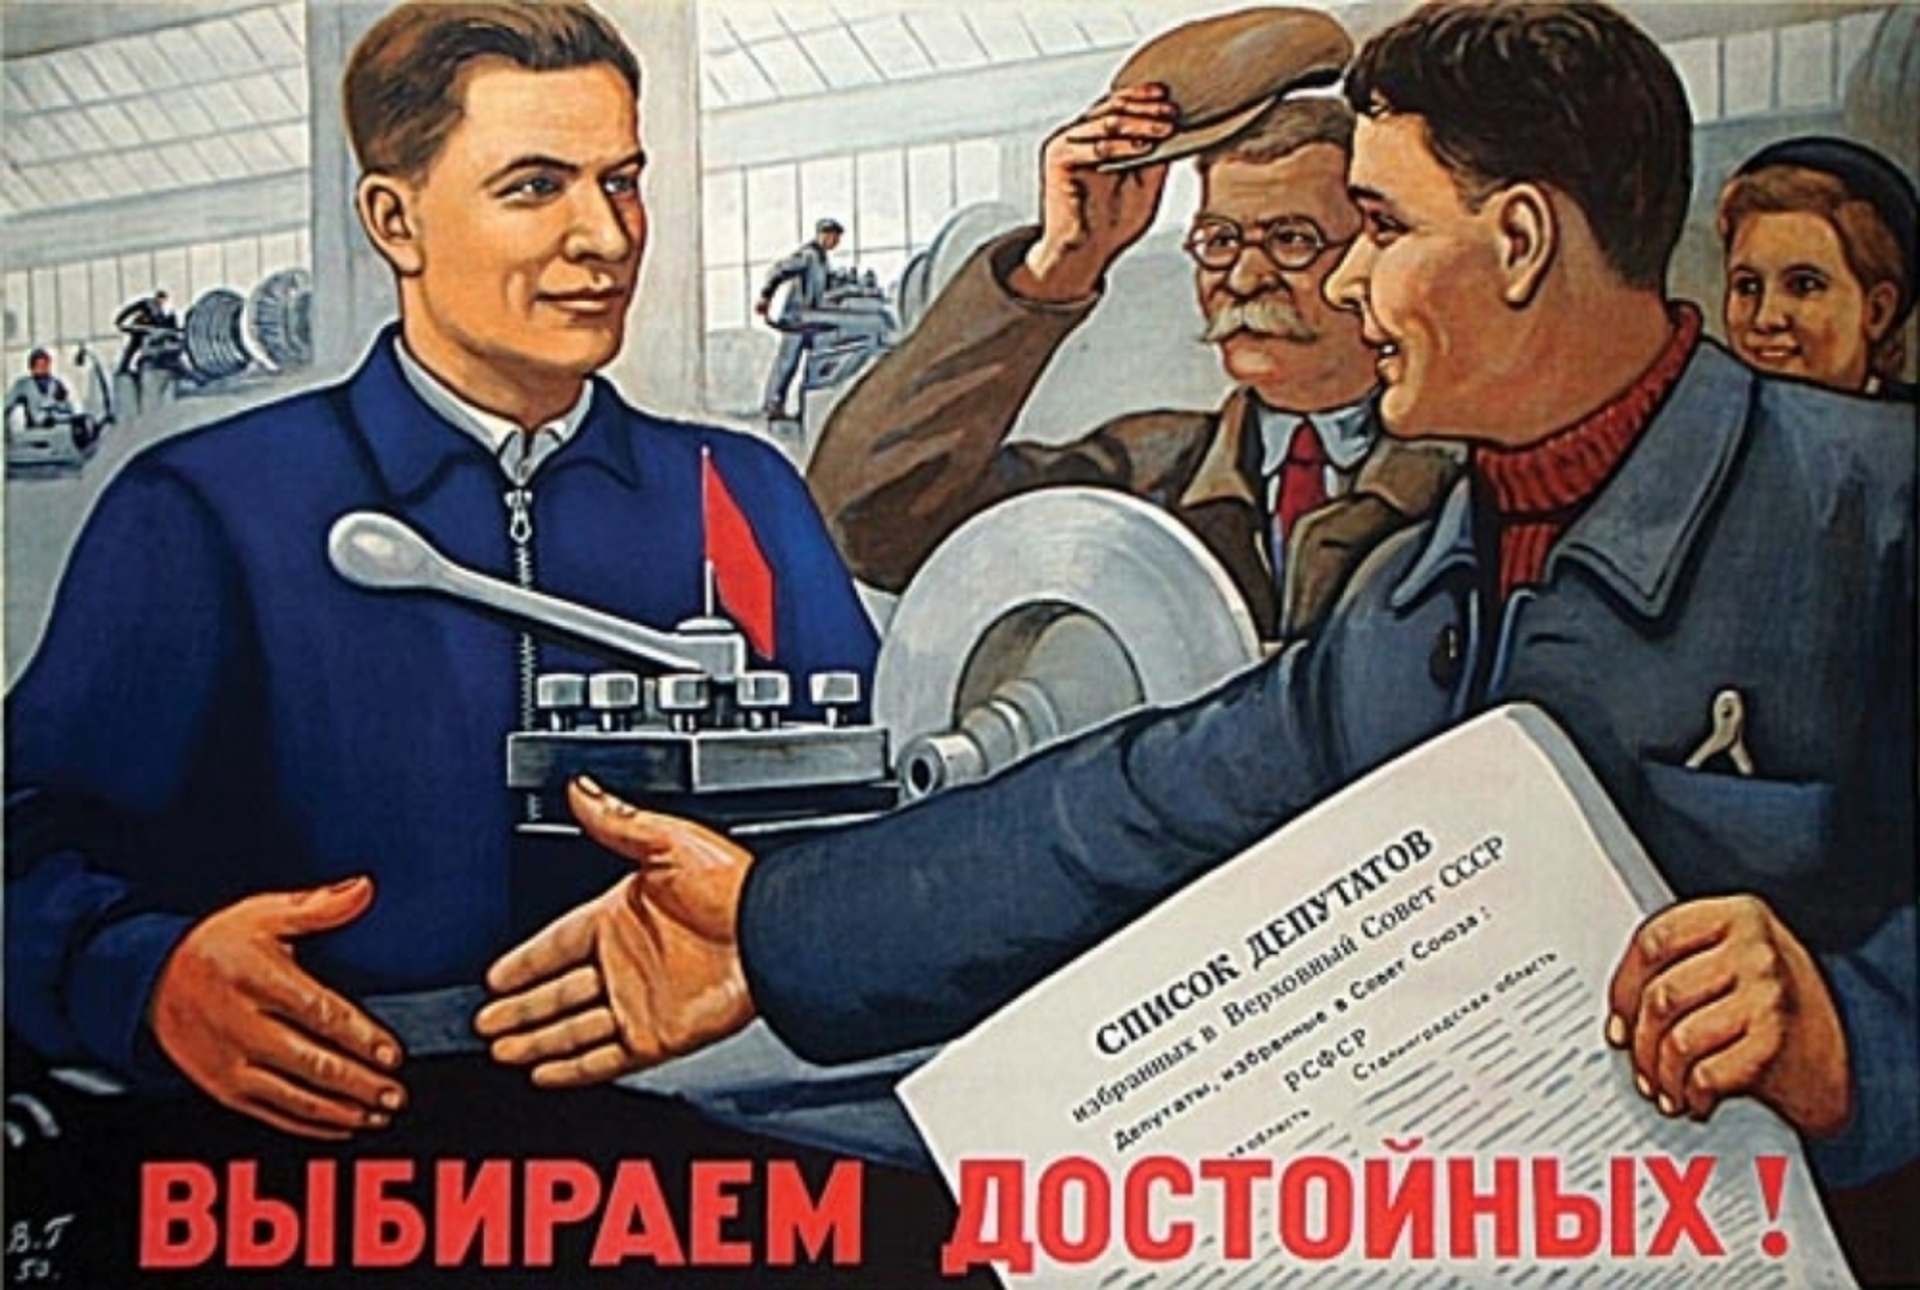 Когда заканчивается агитация перед выборами. Советские плакаты. Плакат депутата. Советские предвыборные плакаты. Плакат выберем достойных.